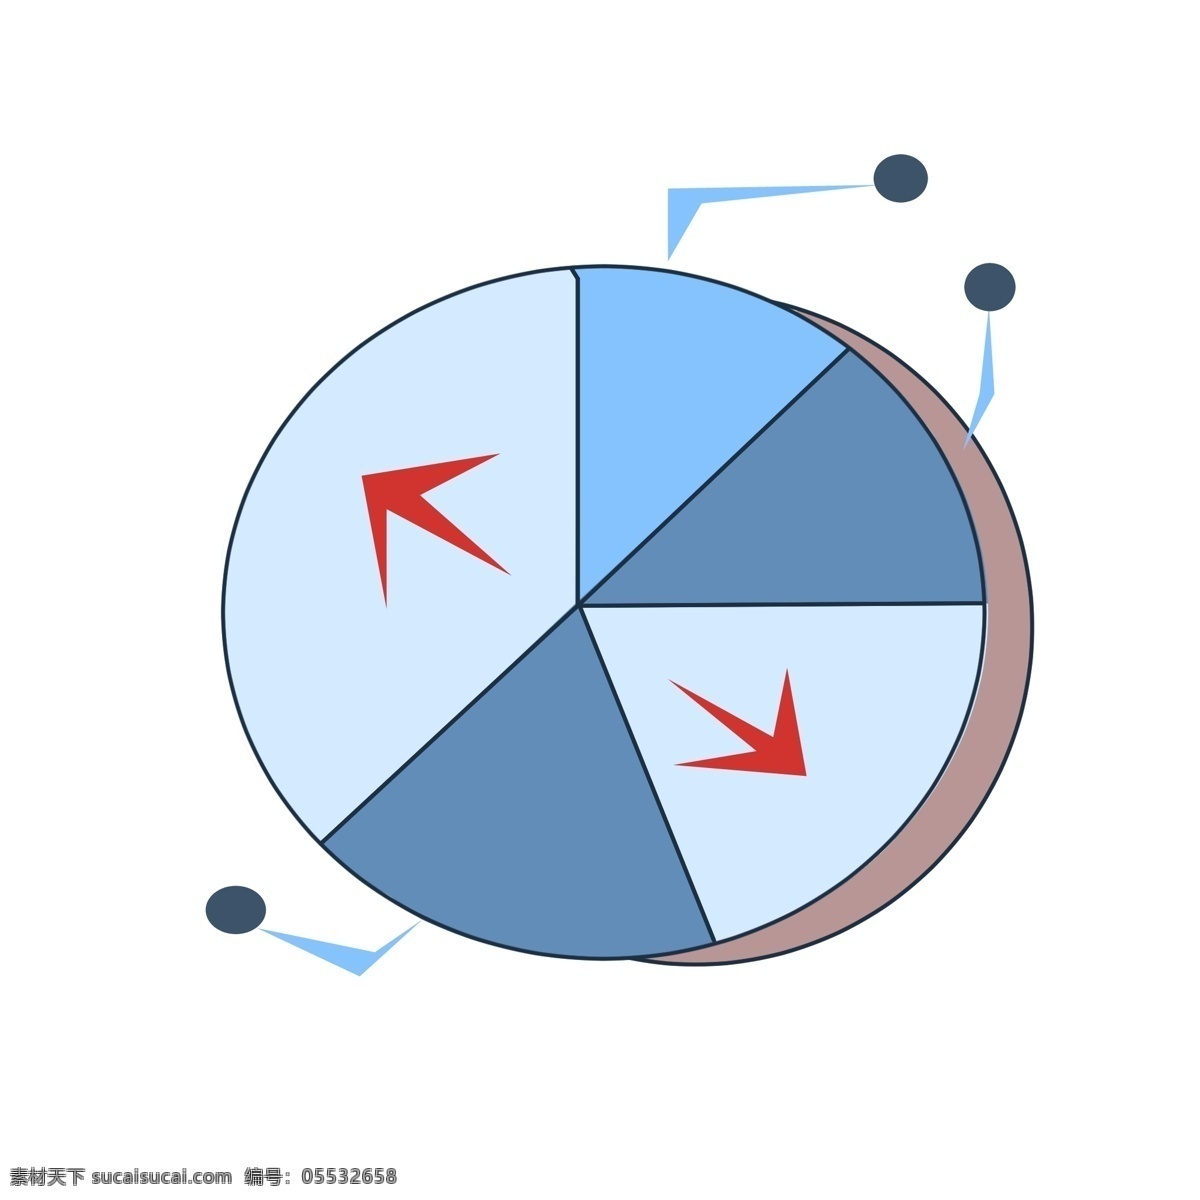 蓝色 渐变 饼 状 图 分析 蓝色渐变 饼状图 红色的箭头 商务 圆形 分析报告 图表 数据 比例 统计